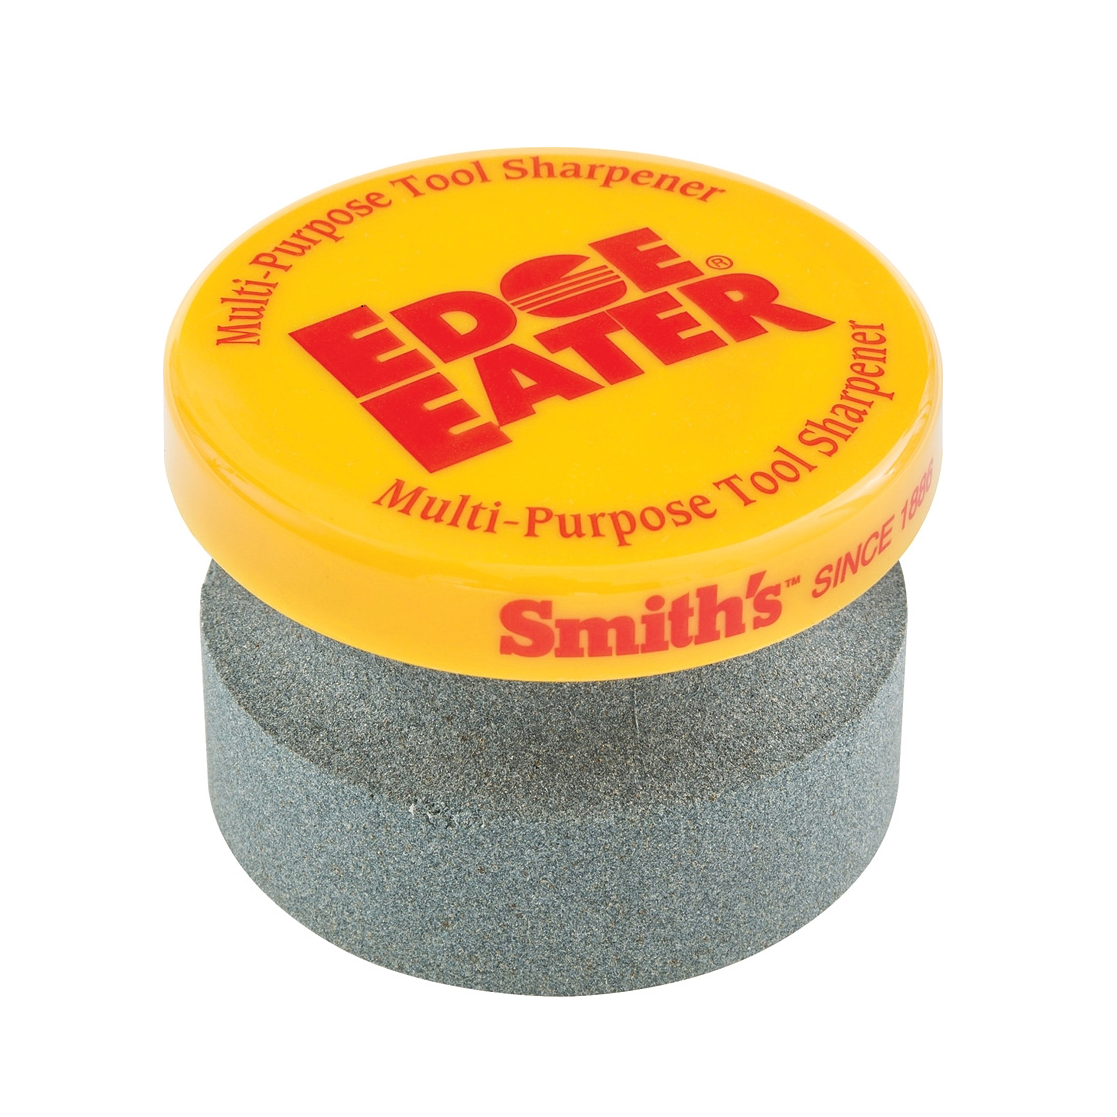 Smith's 50910 Edge Eater Stone